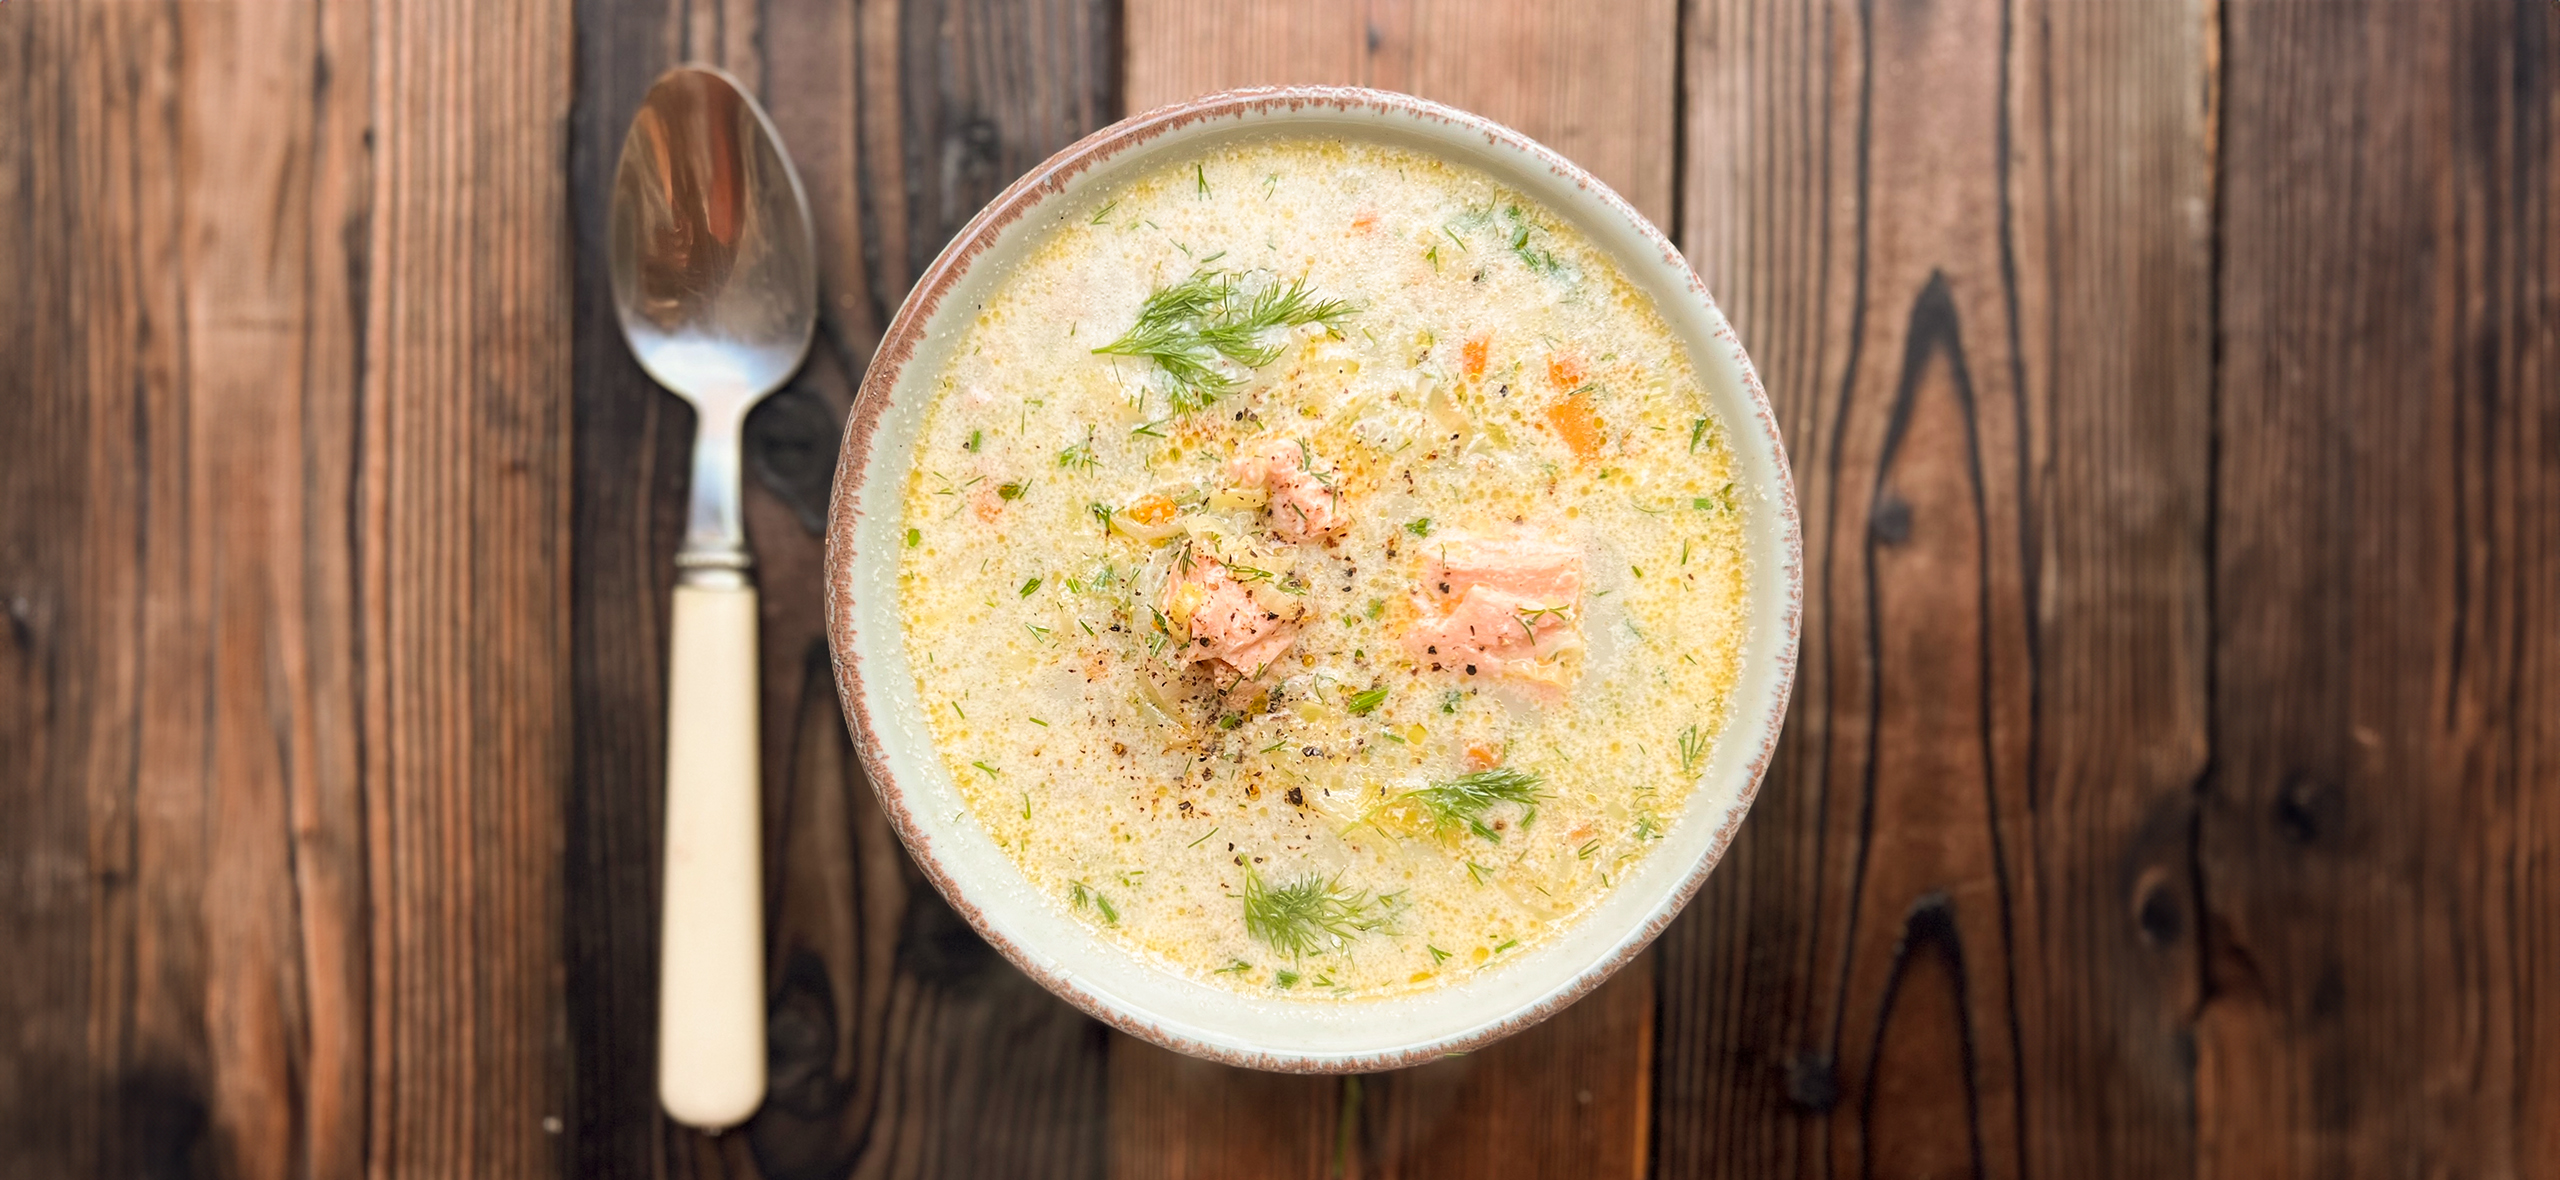 Суп из лосося, пошаговый рецепт на ккал, фото, ингредиенты - Черешенка